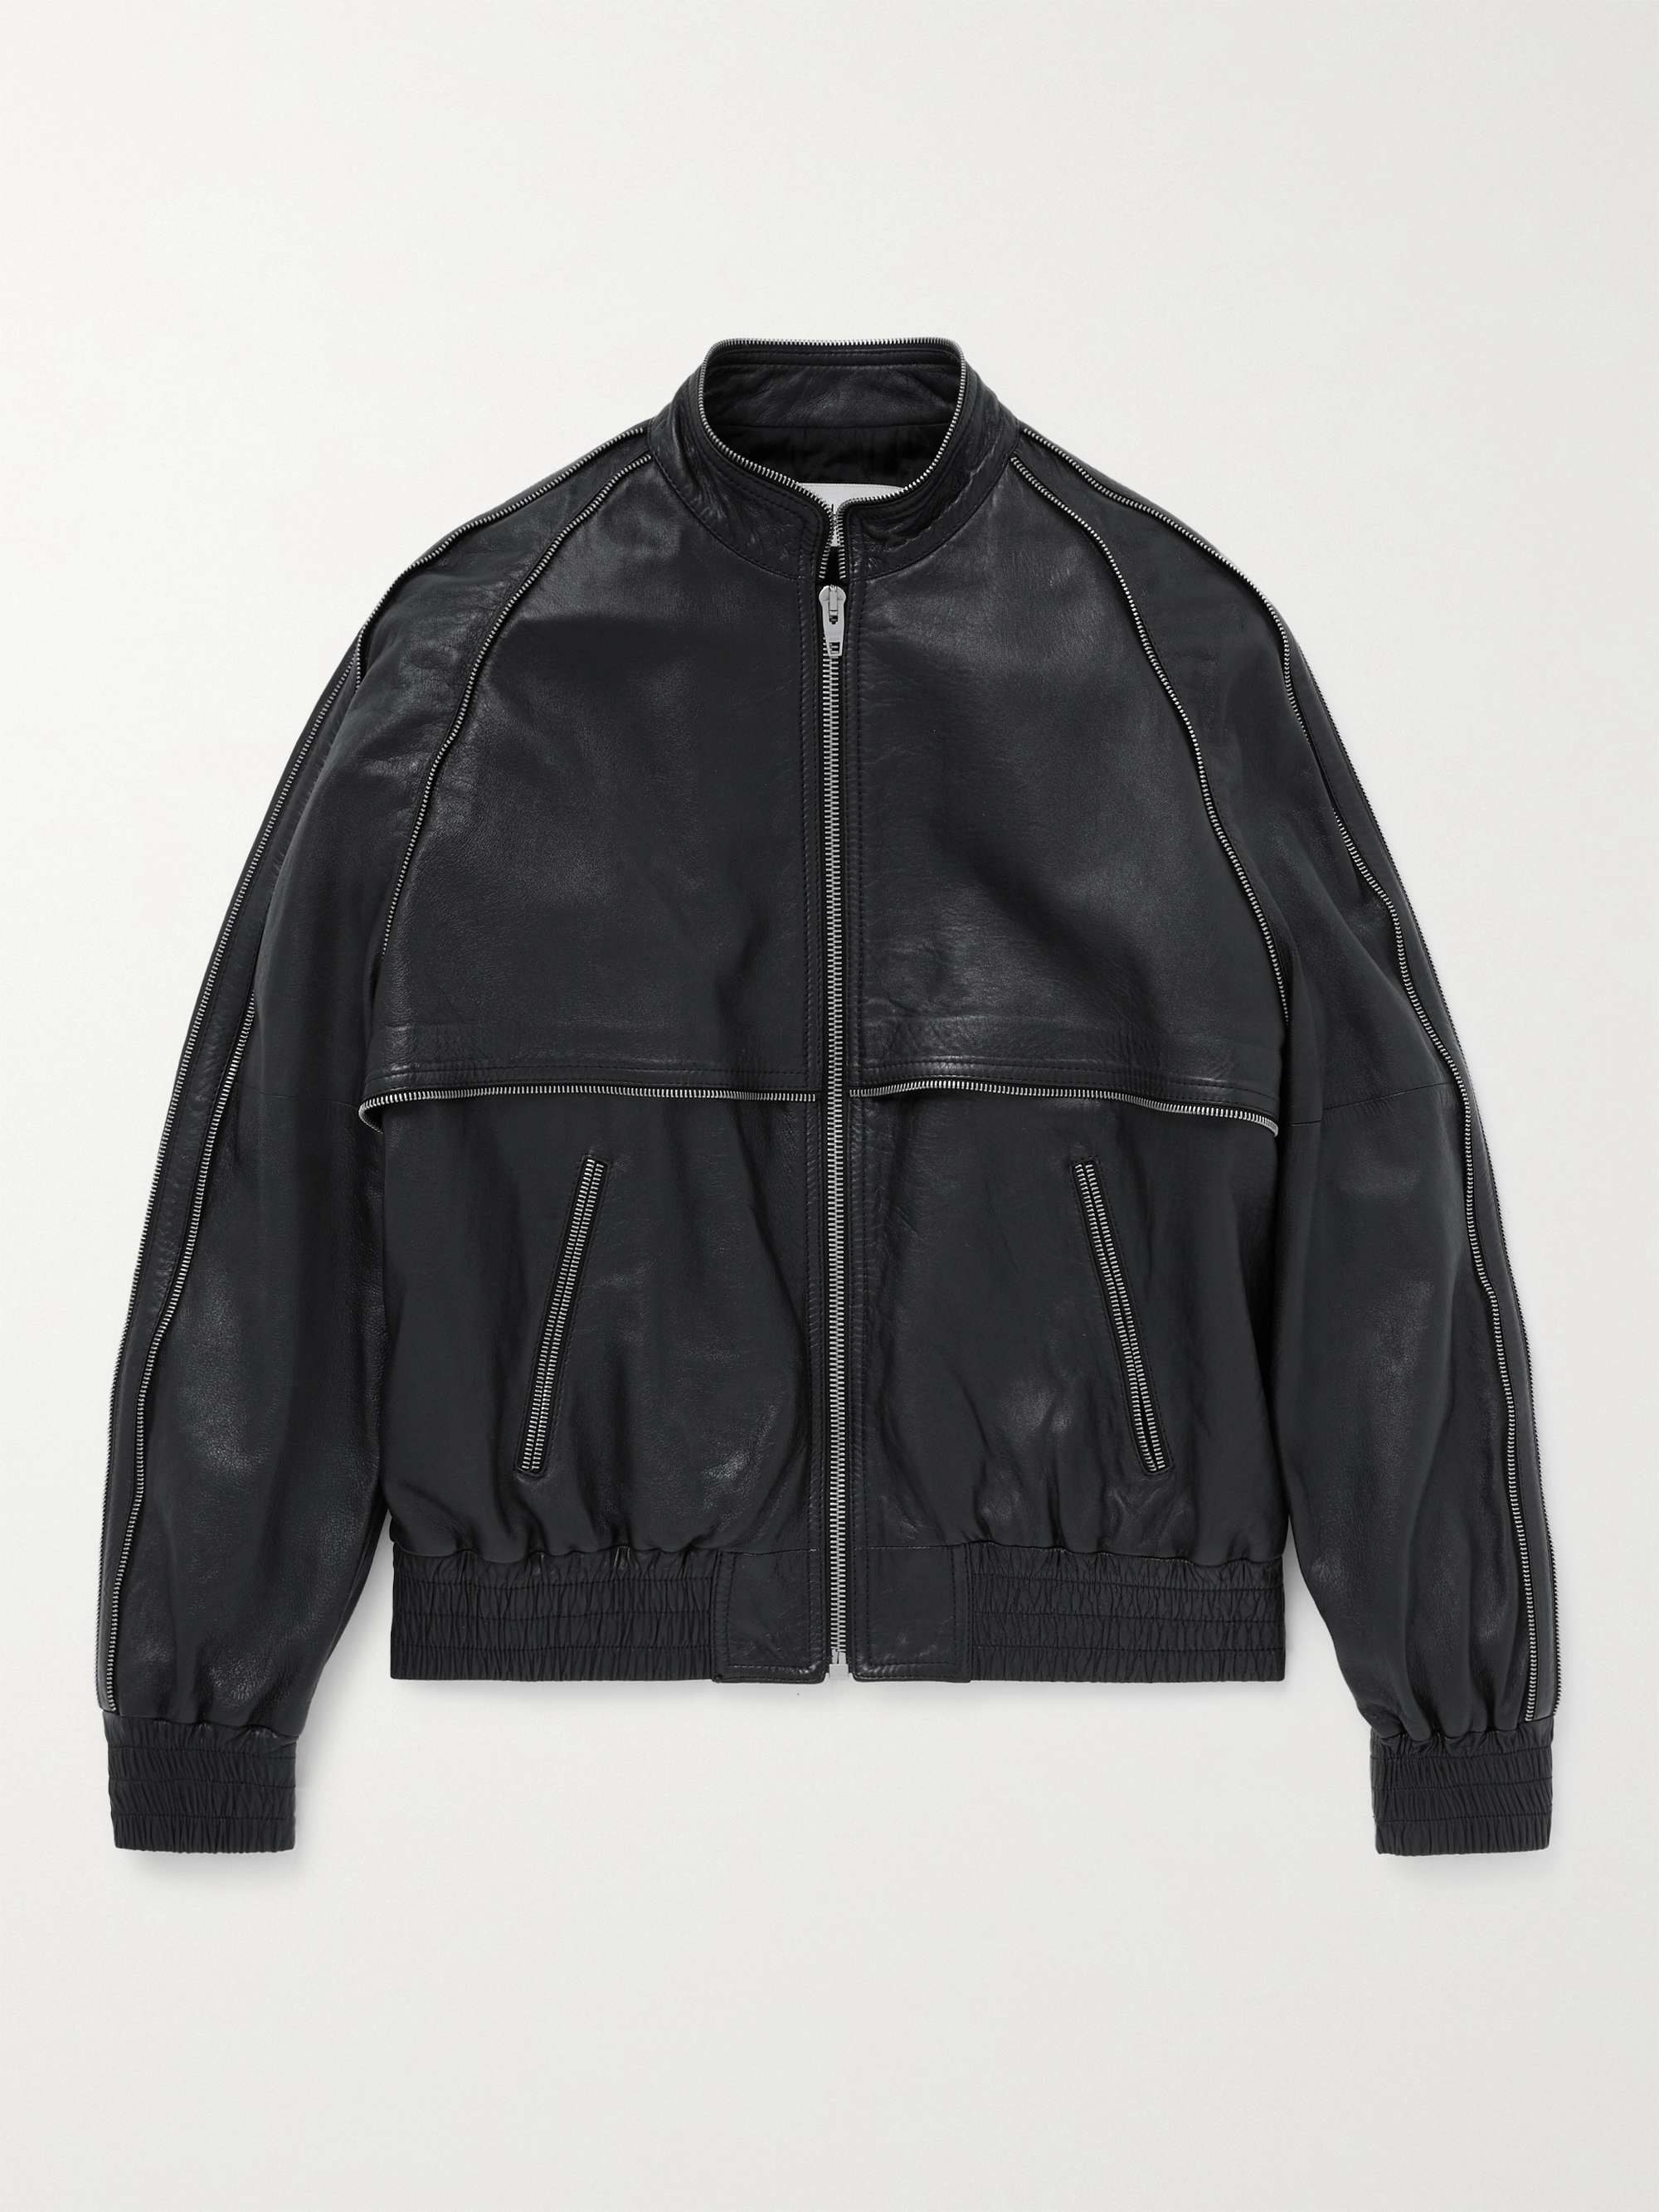 CELINE HOMME Embellished Leather Bomber Jacket for Men | MR PORTER